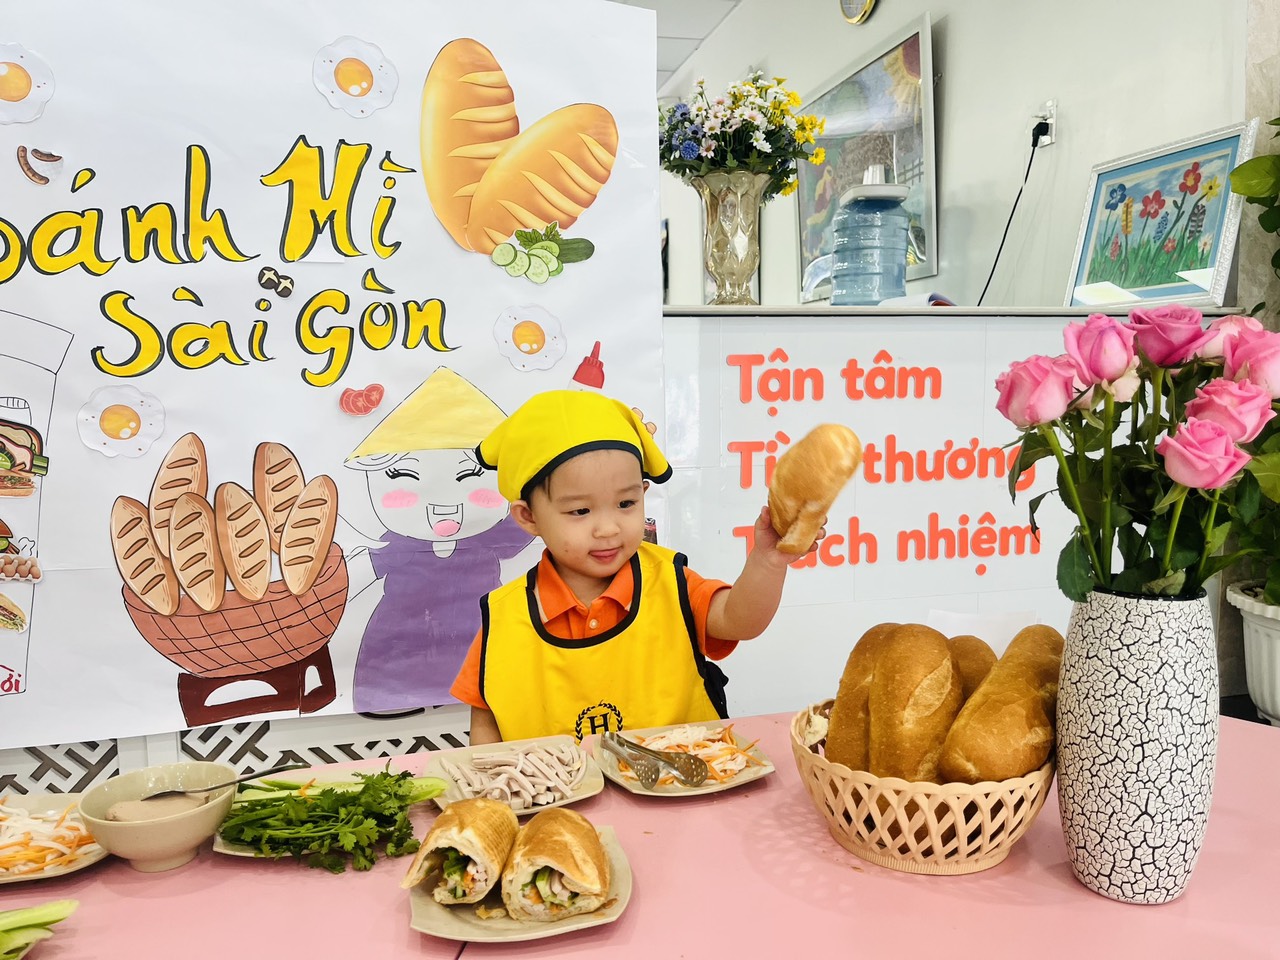 Hiệu Bánh mì Sài Gòn